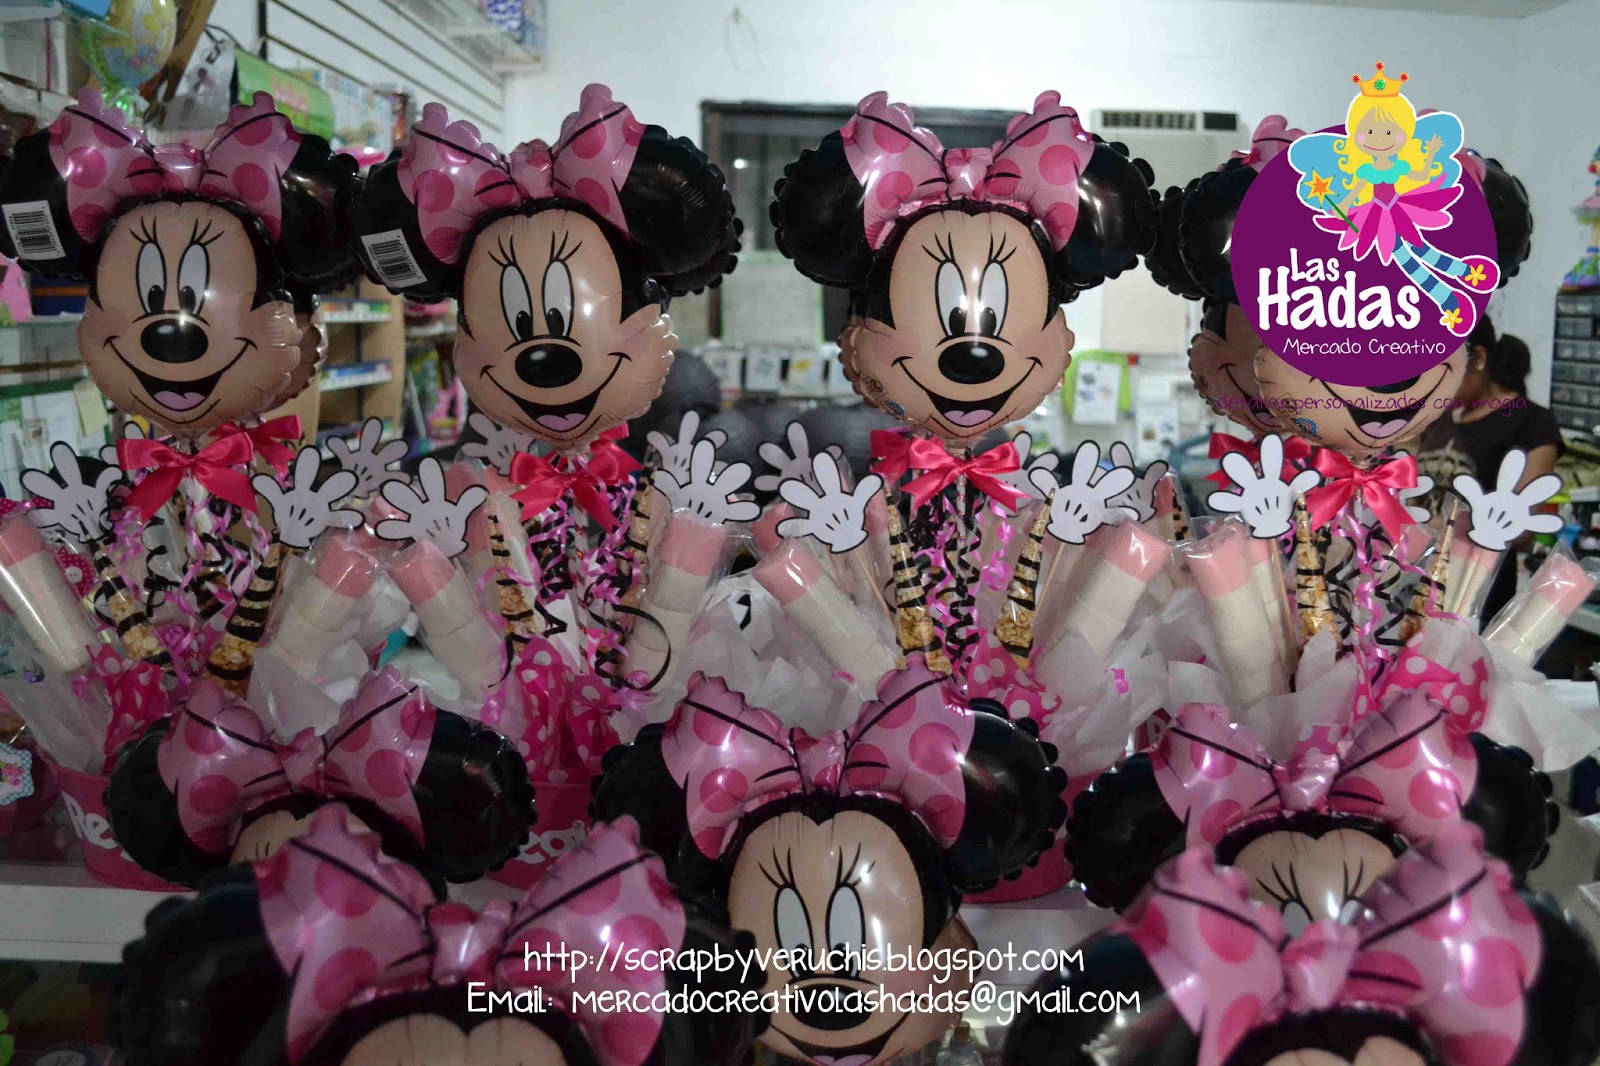 leninismo enfermedad limpiador Scrap by Veruchis: Fiesta Temática Minnie Mouse